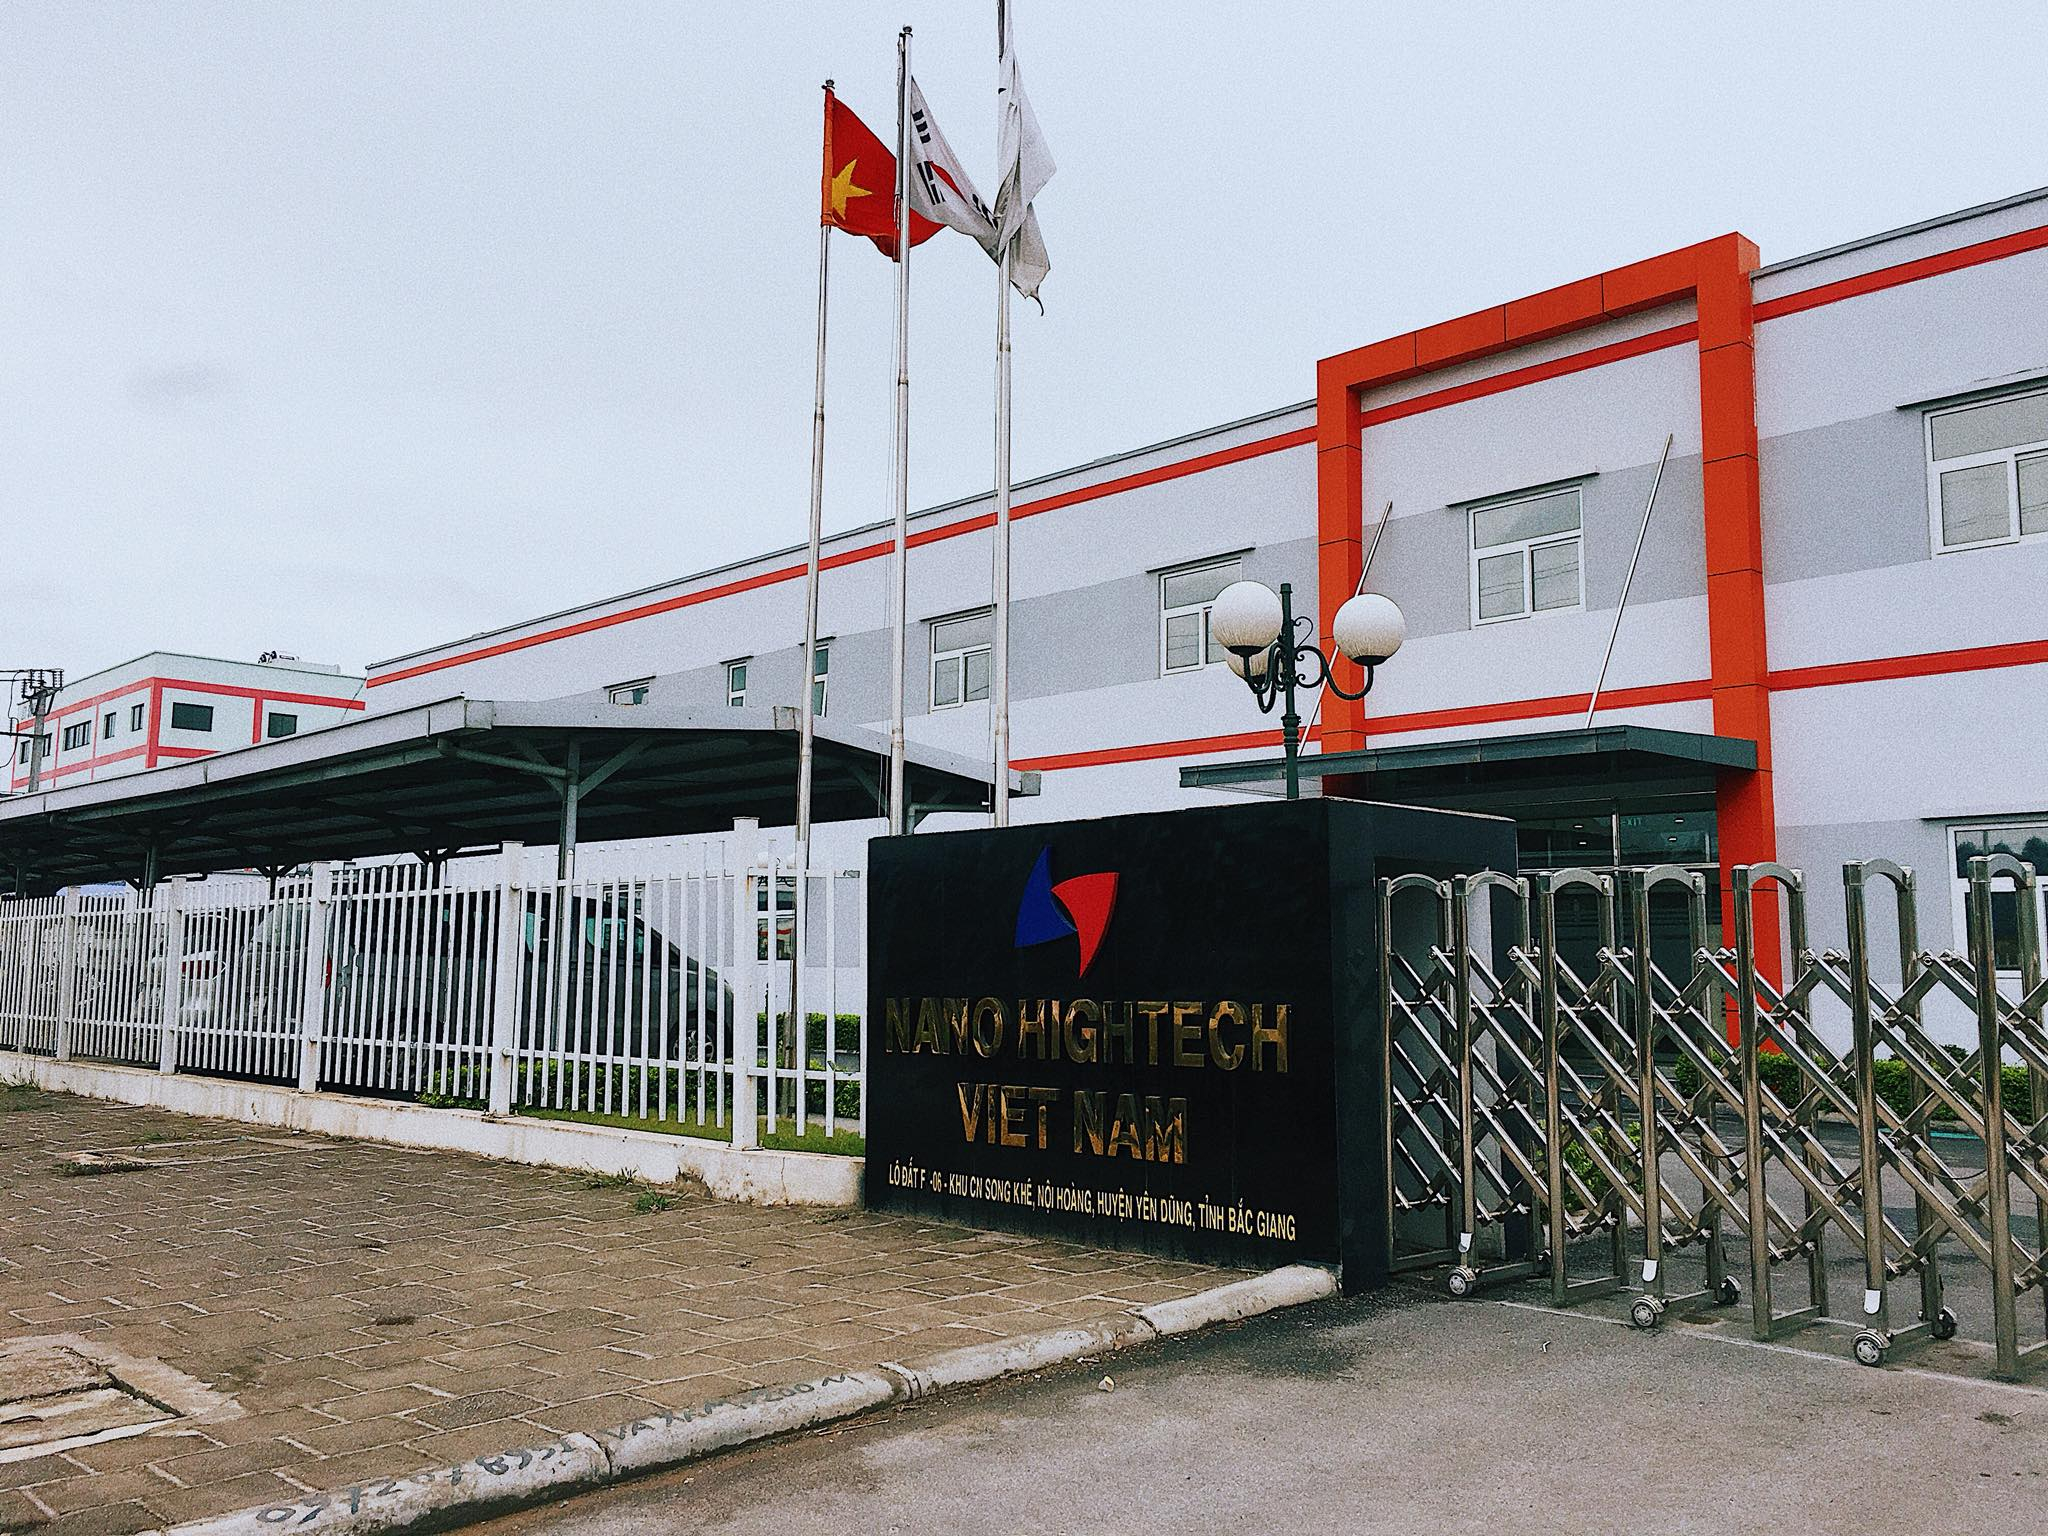 Công ty TNHH Nano Hightech Việt Nam nợ hơn 1 tỷ đồng tiền thuế